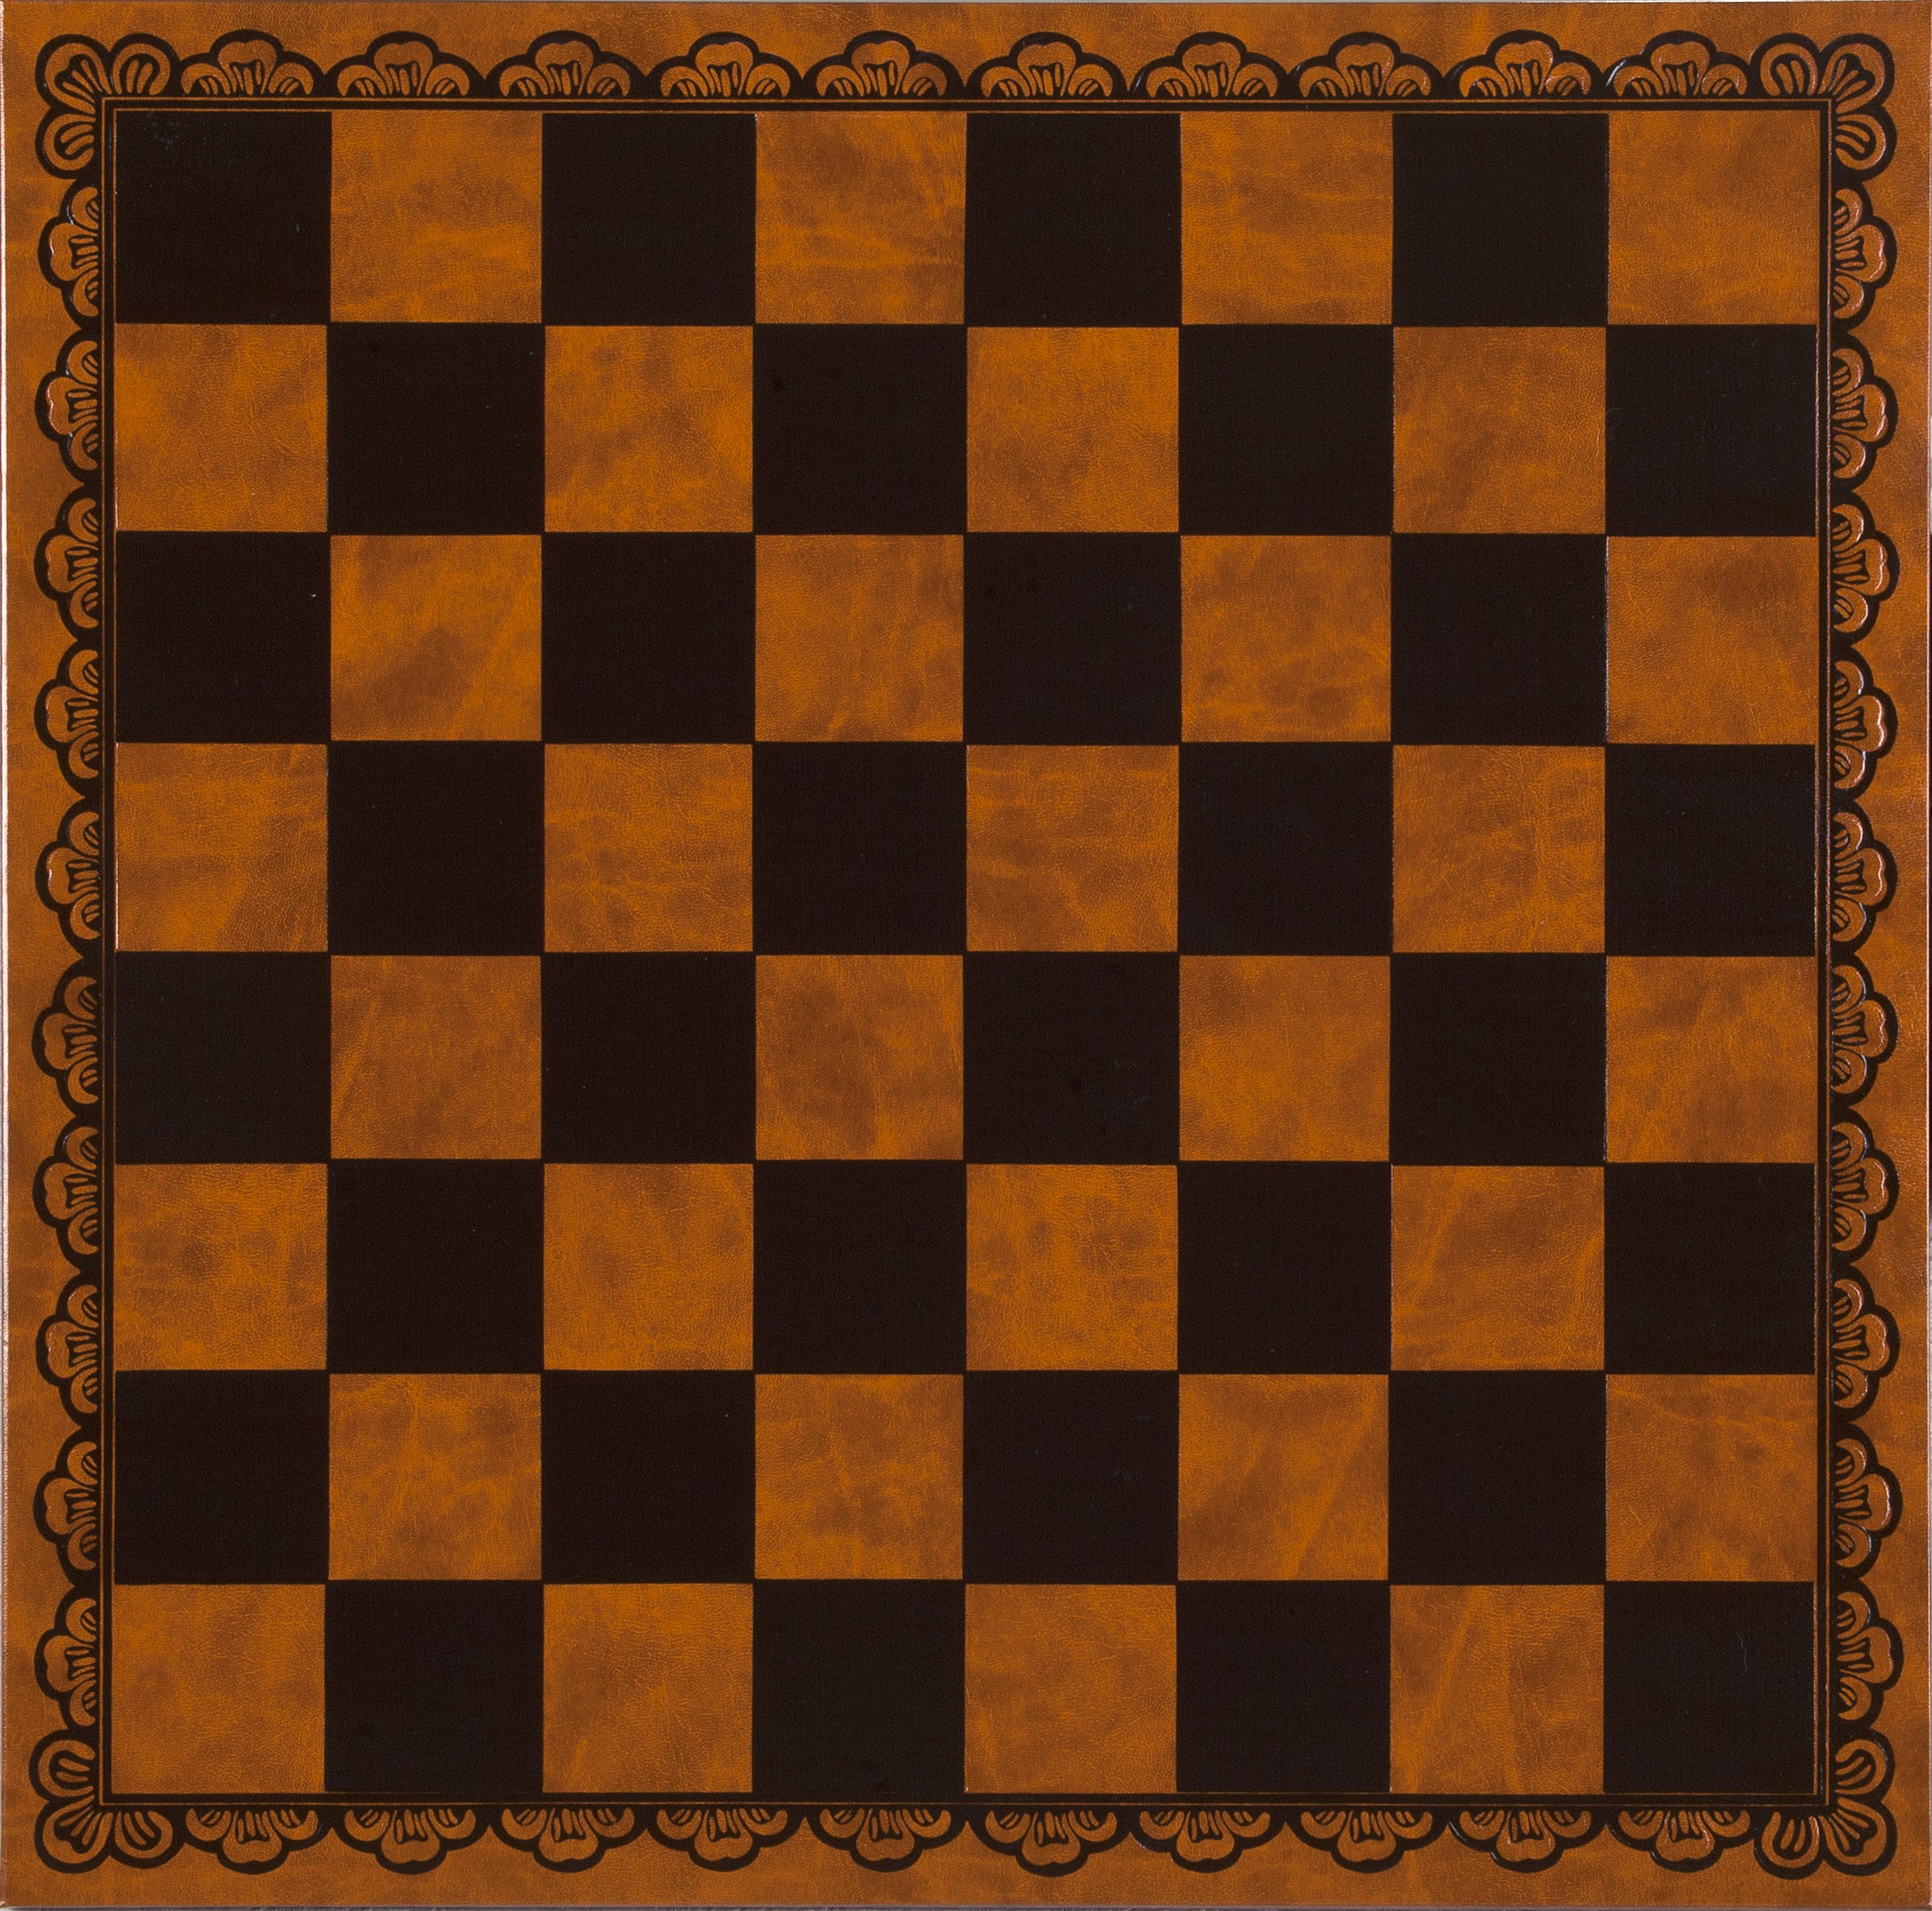 Chessboard. Чесс борд шахматная доска. Шахматы поле. Шахматная доска текстура. Поле для шашек.